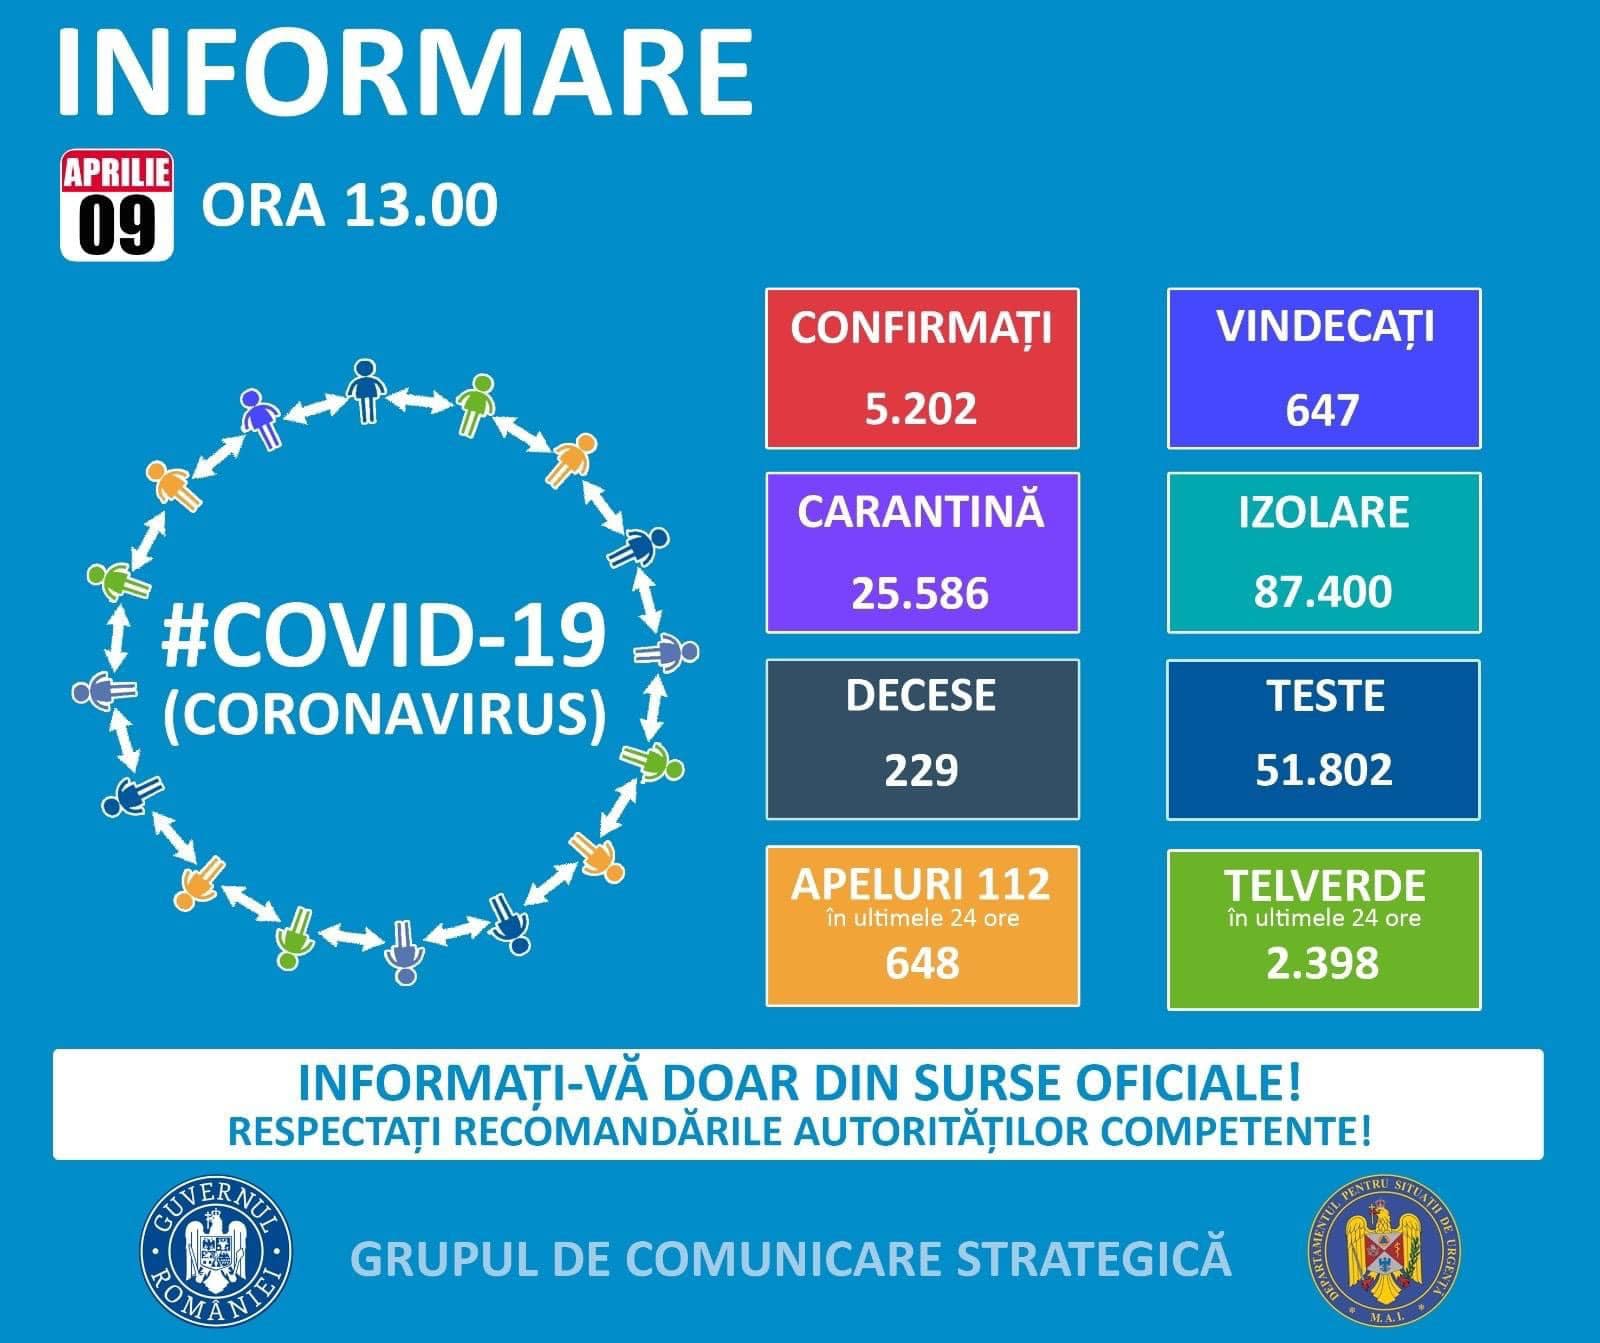 Coronavirus Rumänien situation 9 april 2020